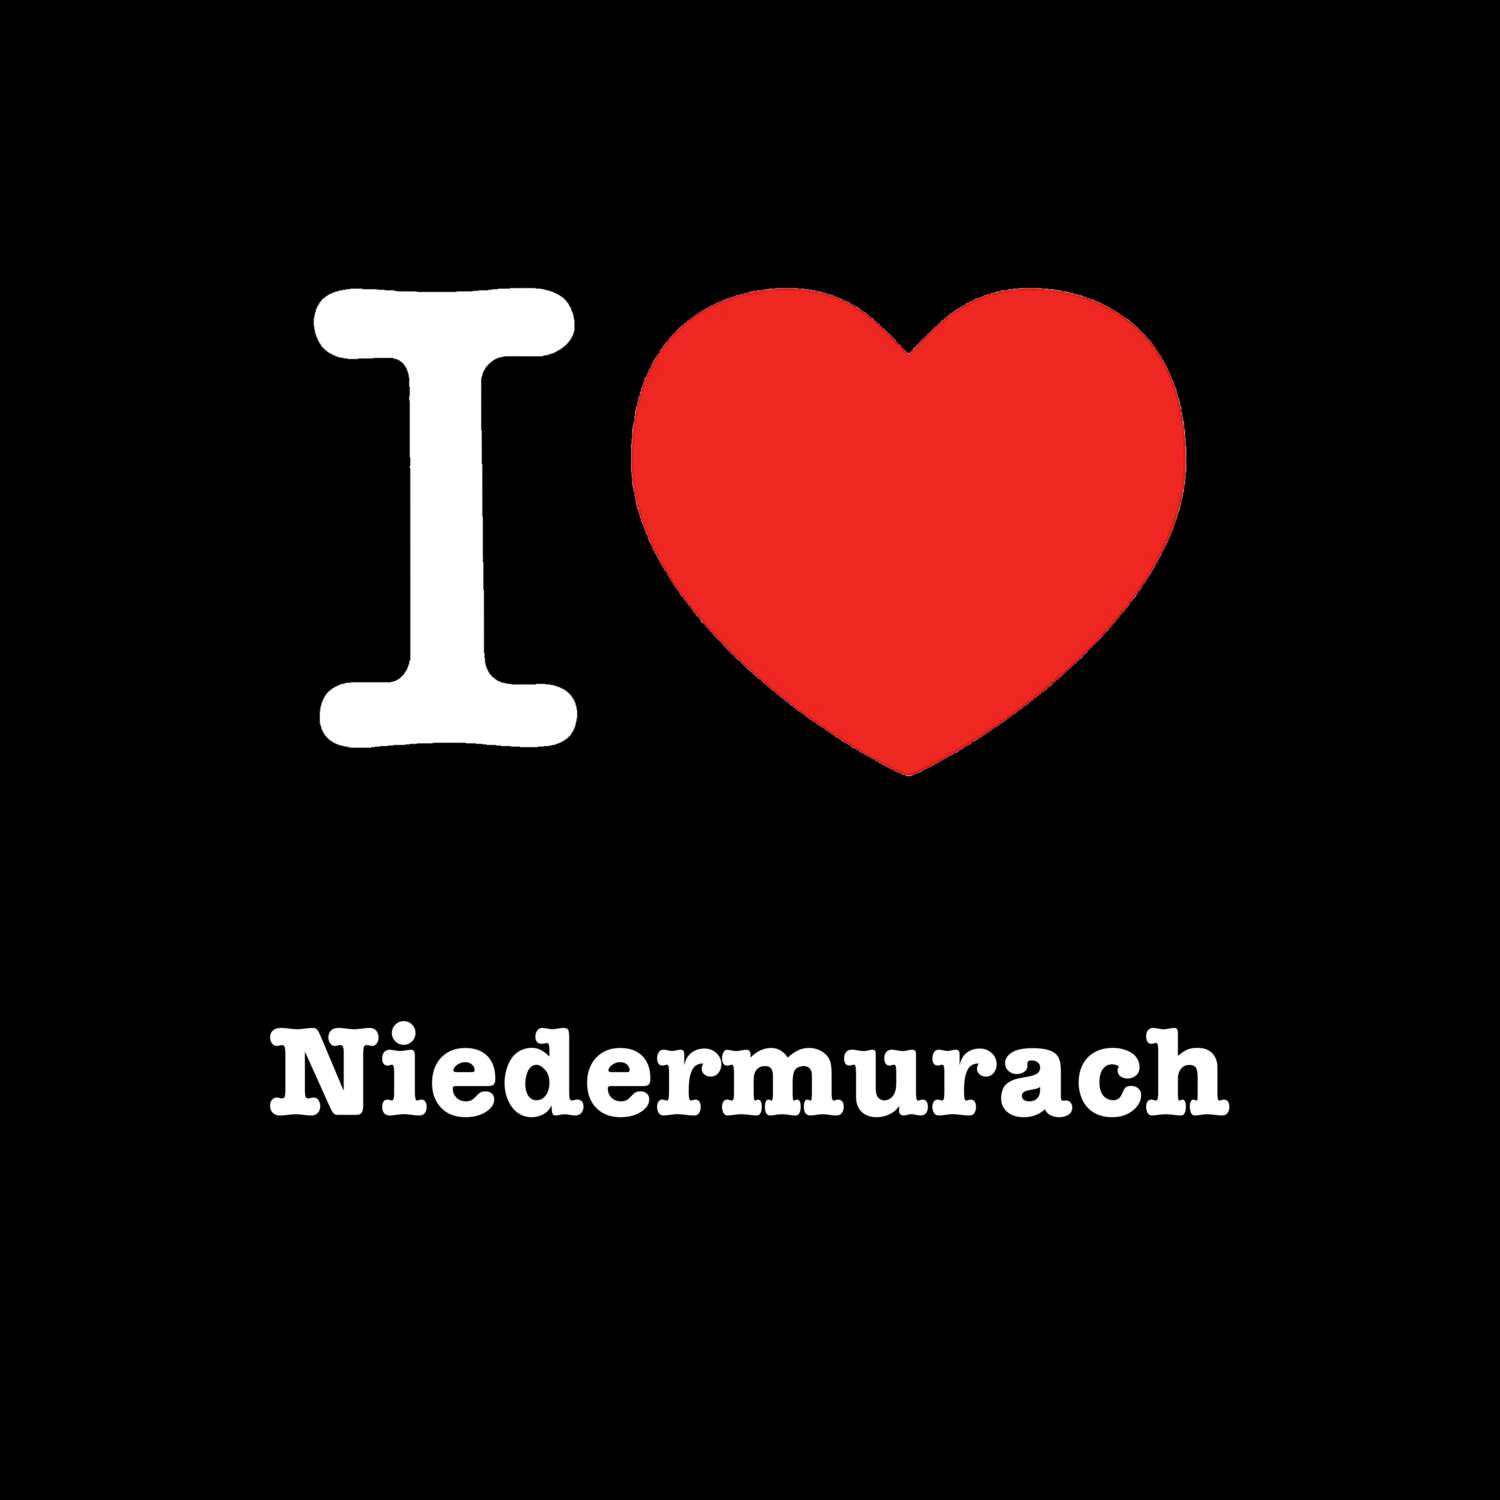 Niedermurach T-Shirt »I love«